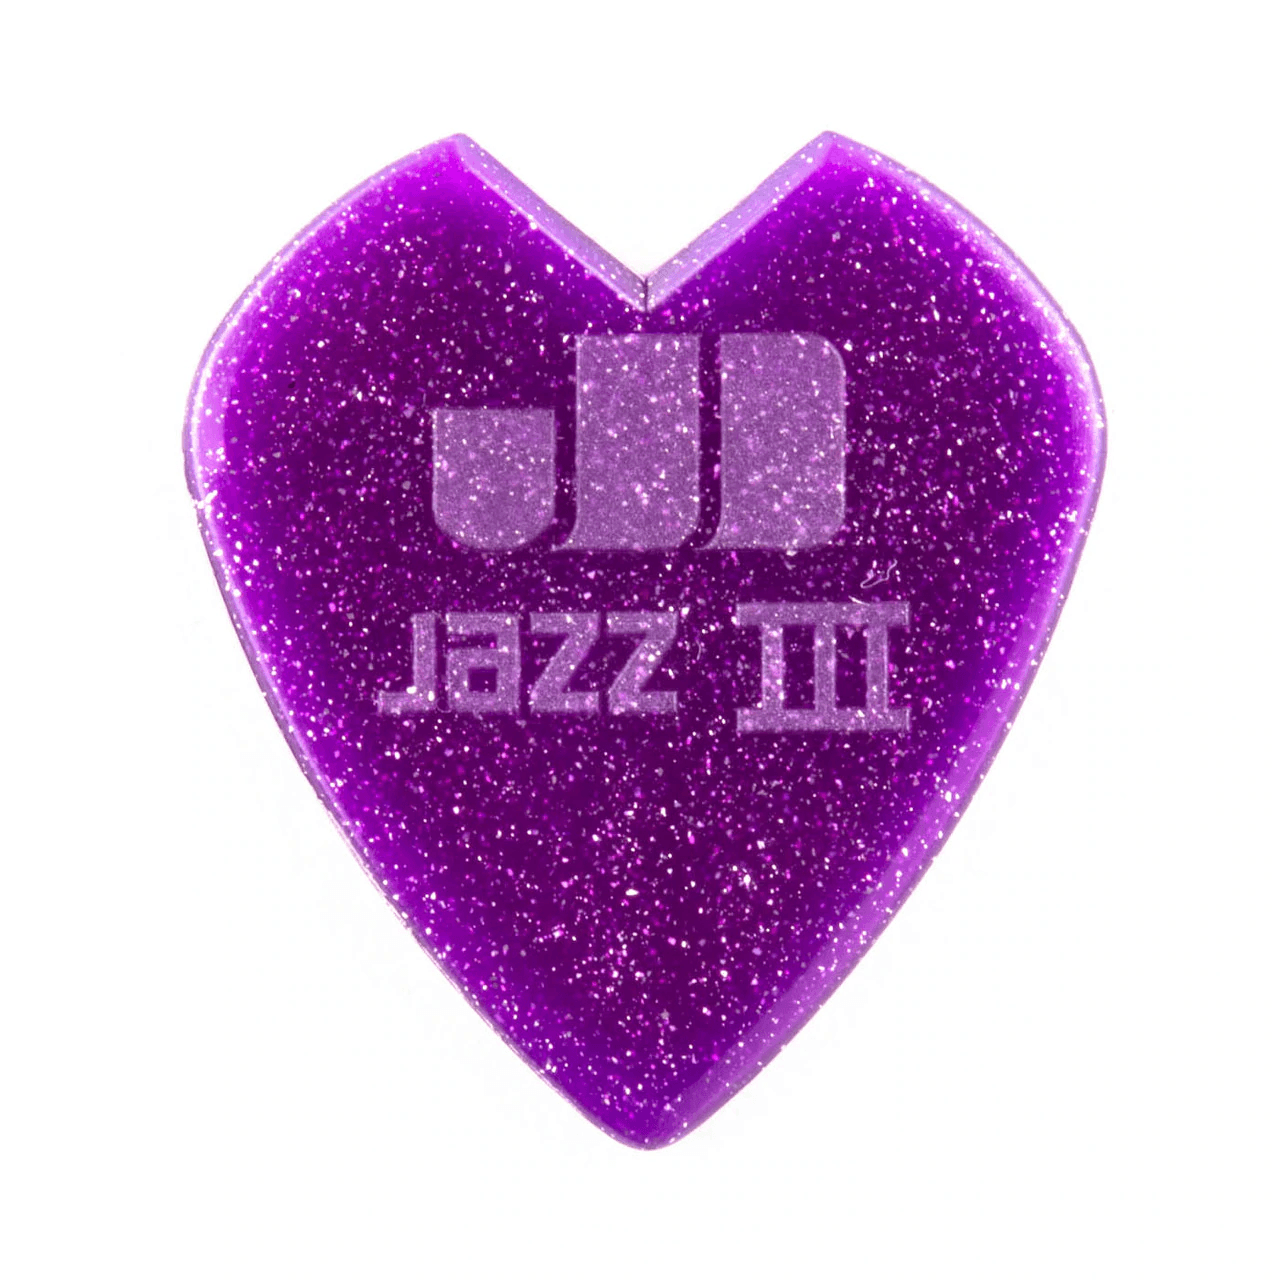 Kirk Hammett Jazz III Purple - Guitars - Picks by Dunlop at Muso's Stuff